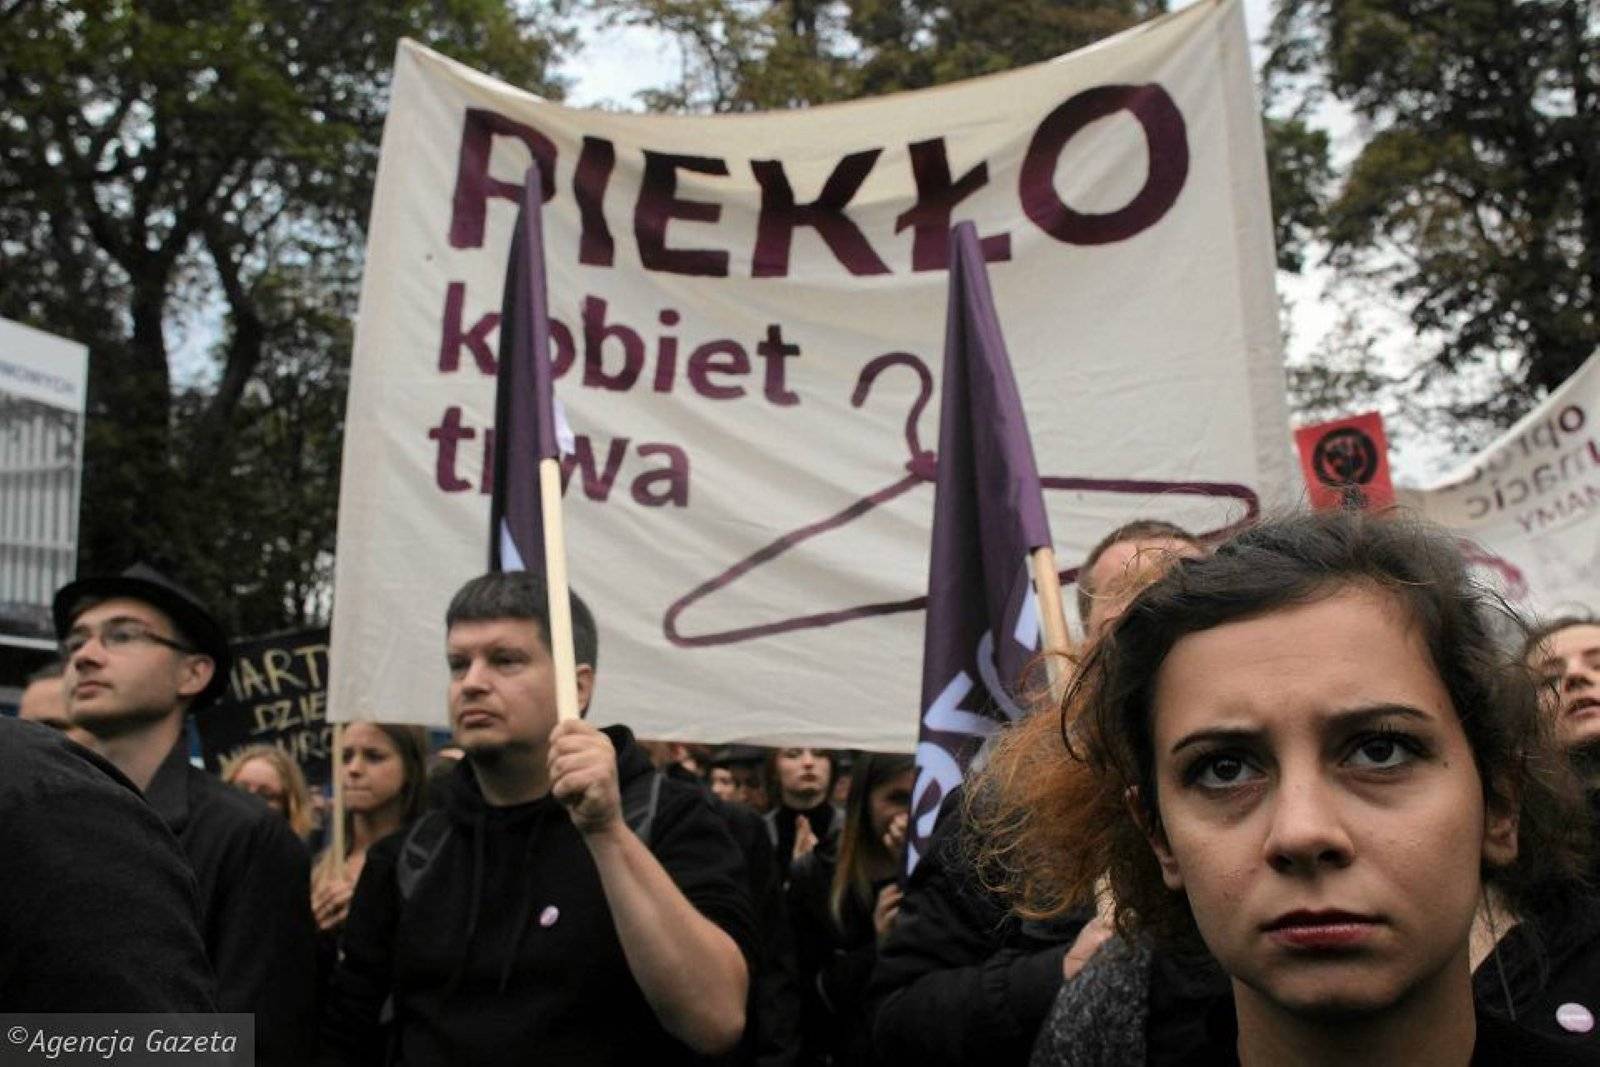 Czarny Piątek, kobieta trzyma plakat Piekło kobiet trwa